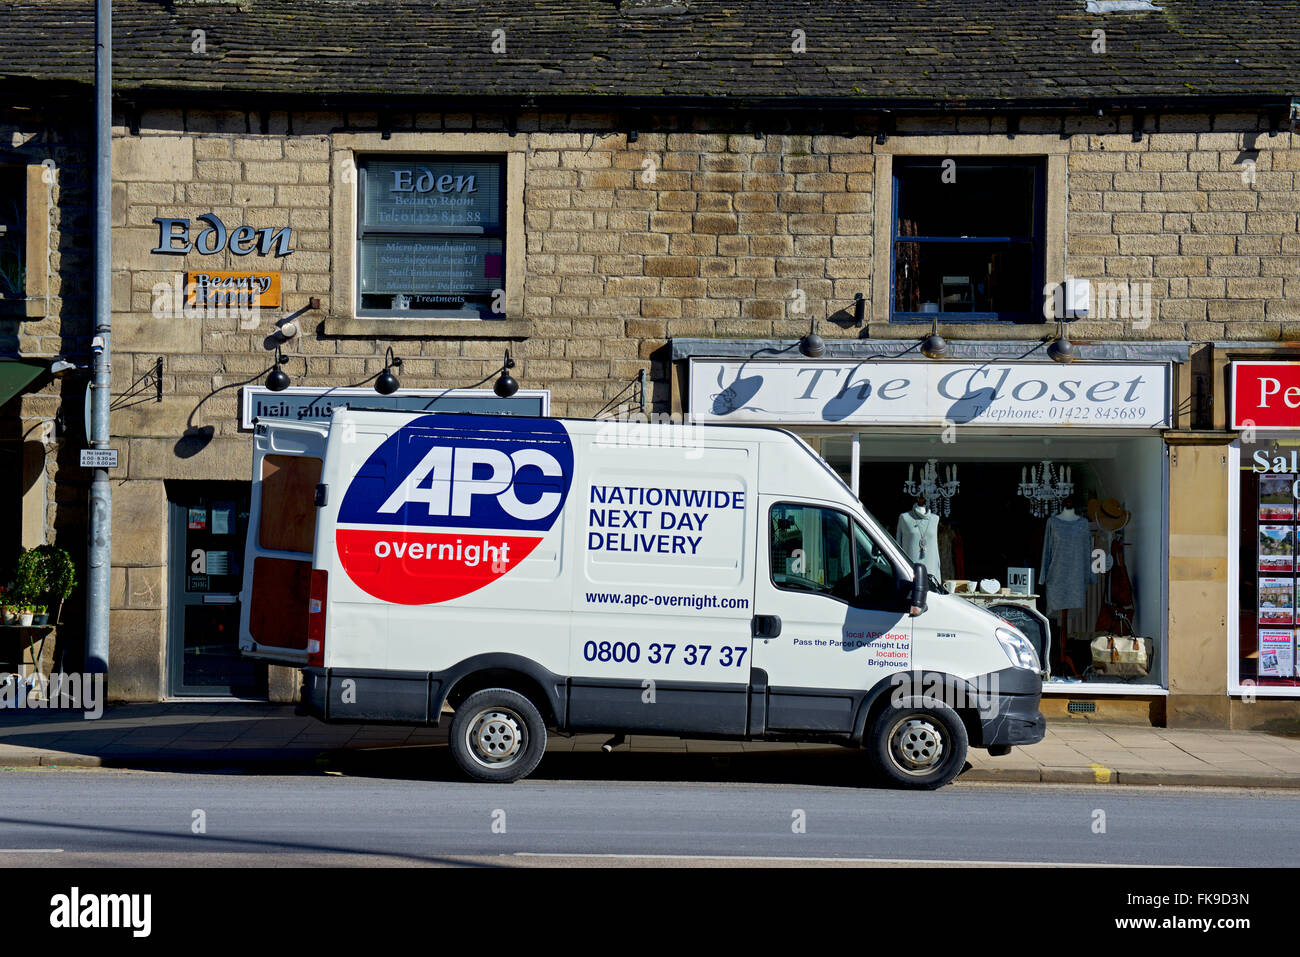 APC bundesweit Delvery van geparkt vor Geschäften, England UK Stockfoto